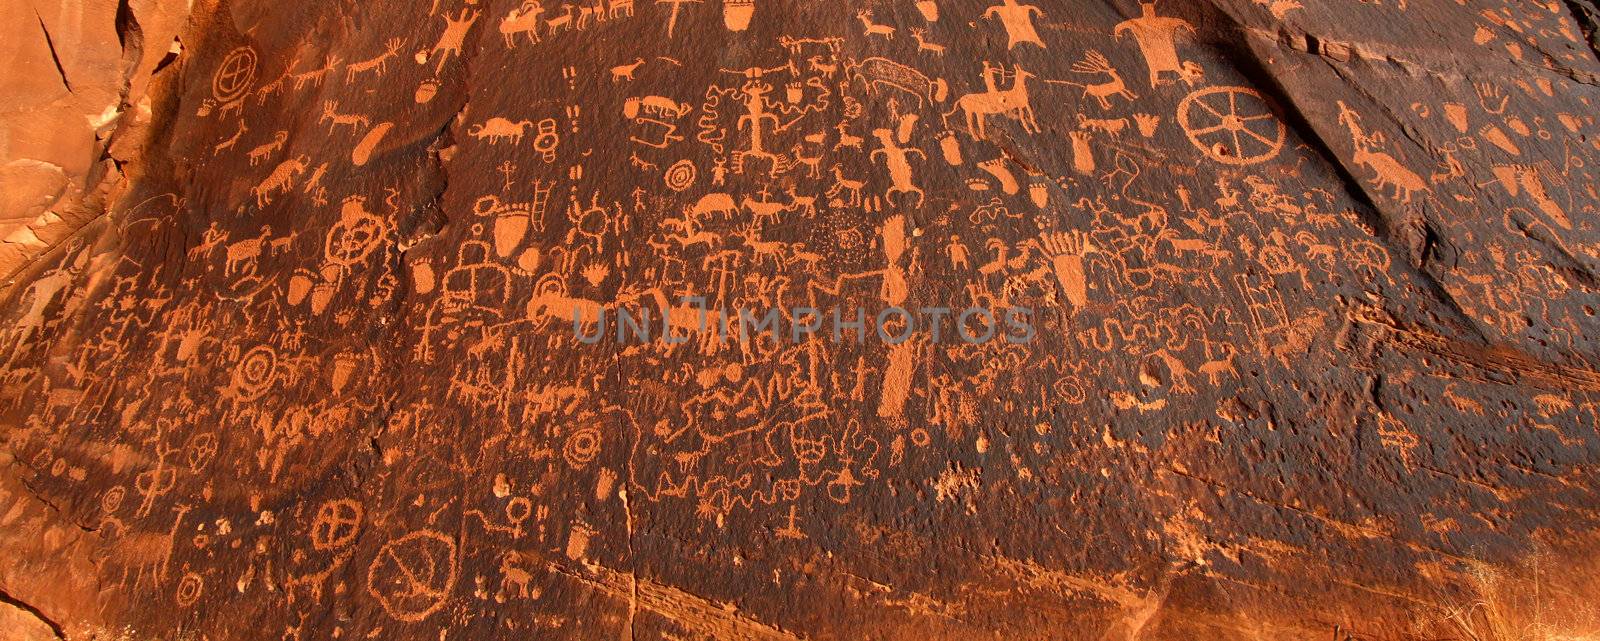 Newspaper Rock Petroglyphs in Utah by Wirepec